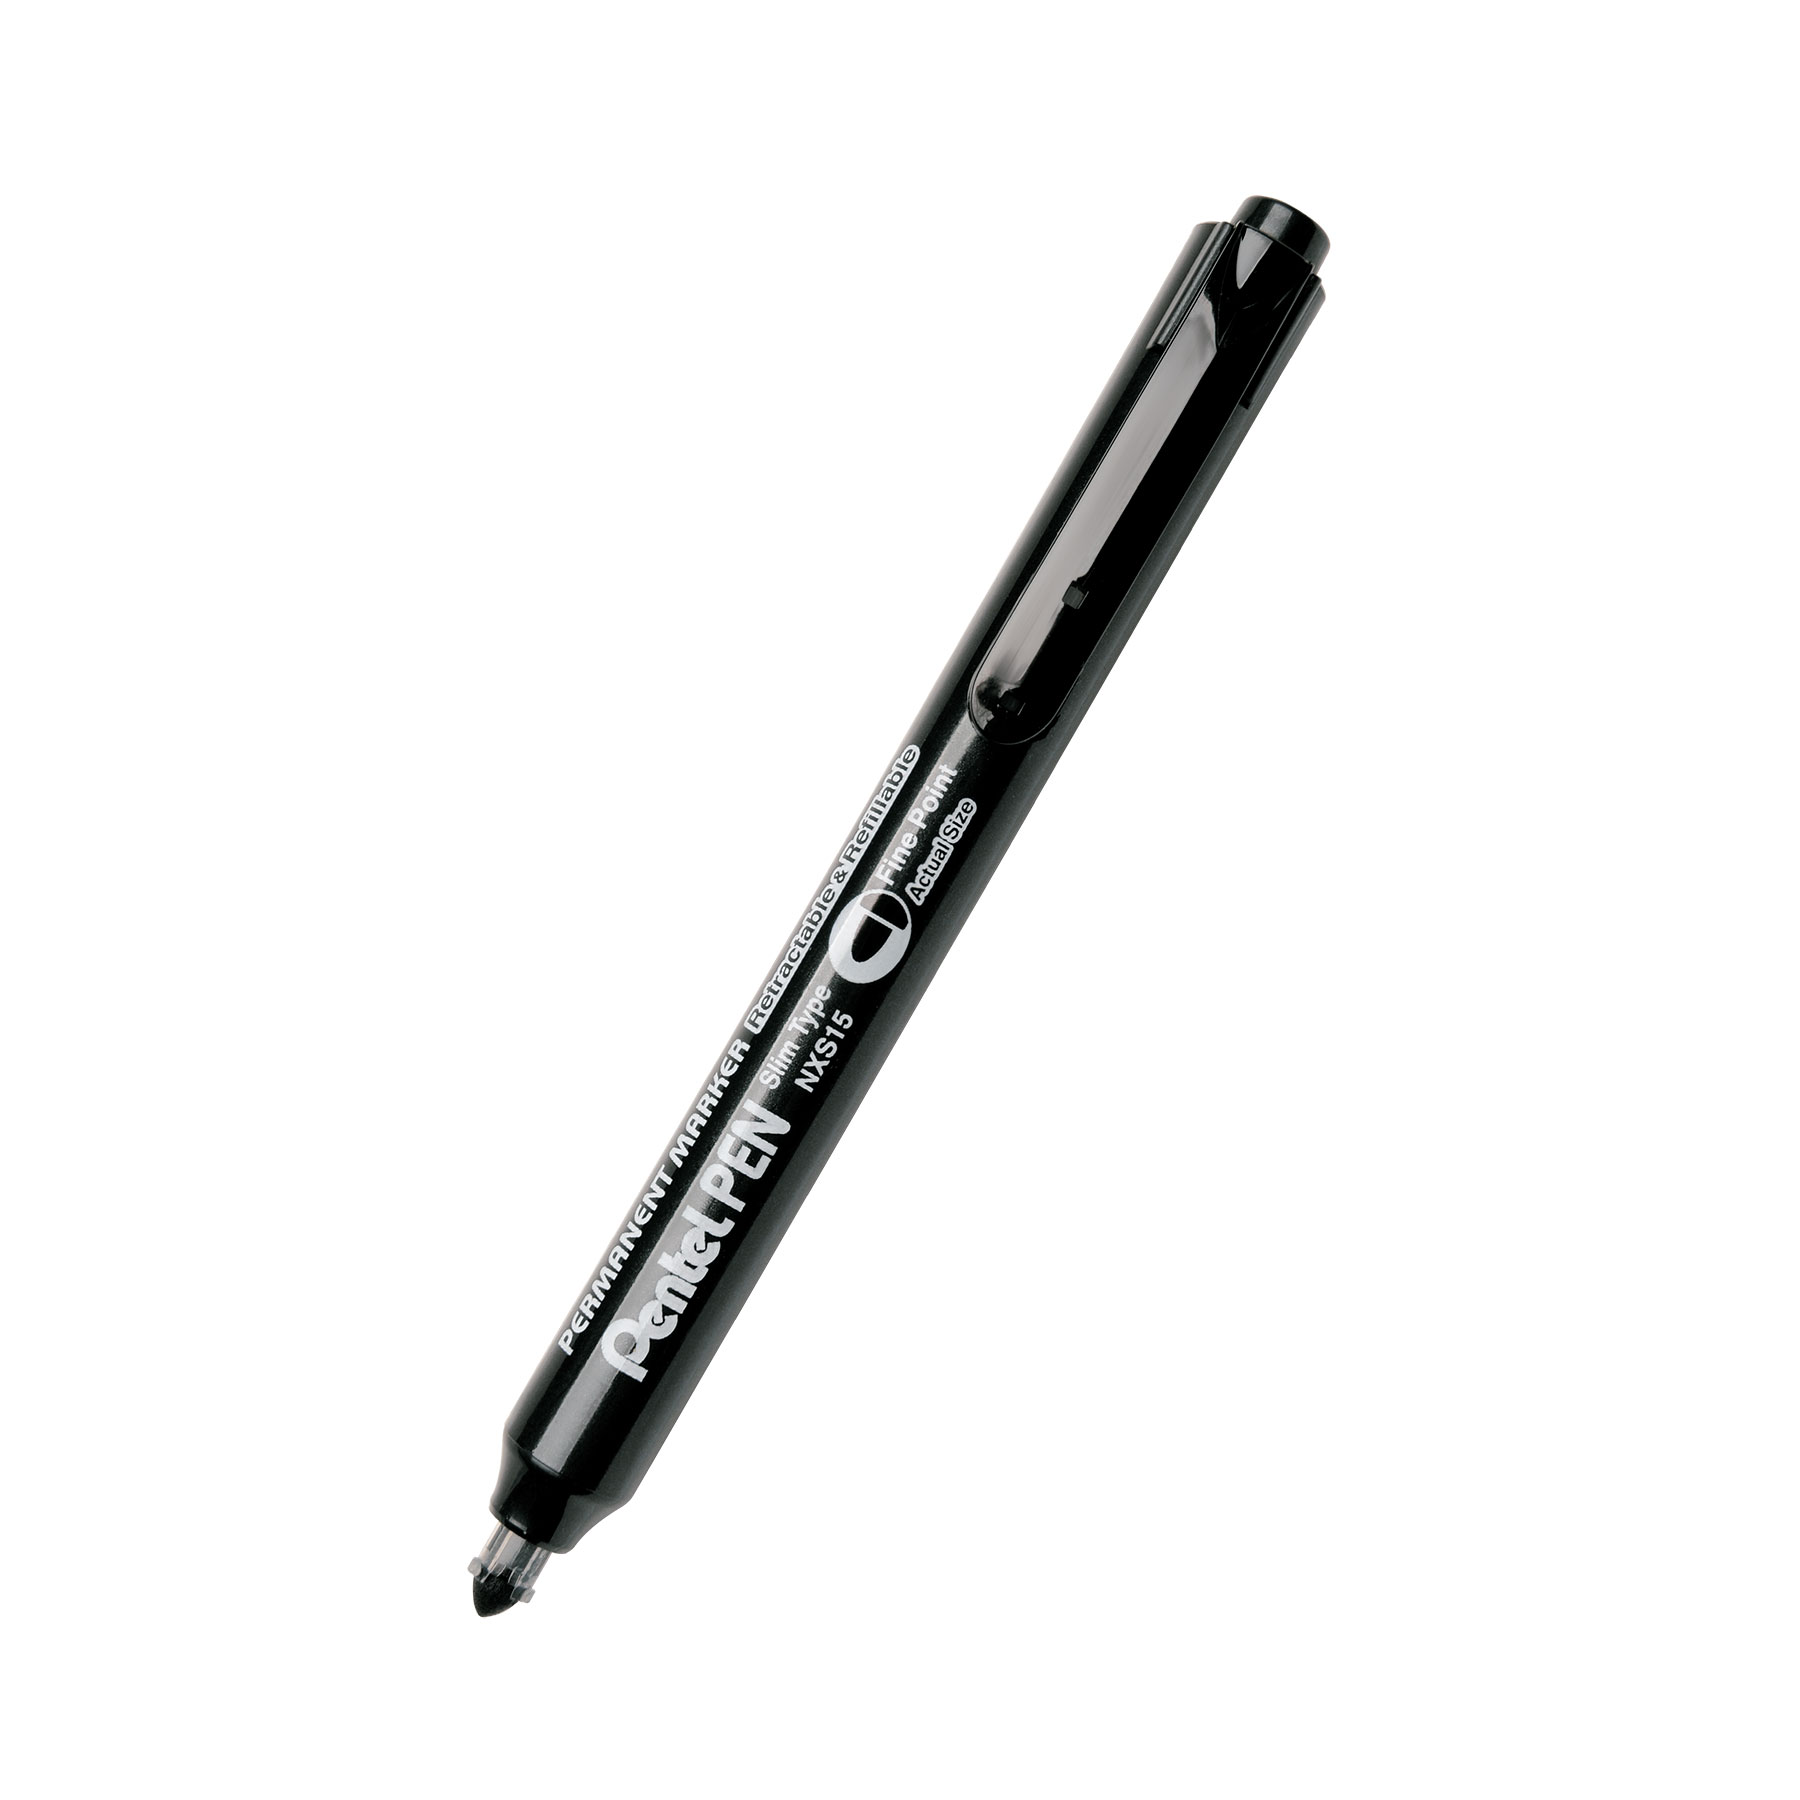 Popisovač Pentel Pen Slim Type NXS15, permanentní, černý